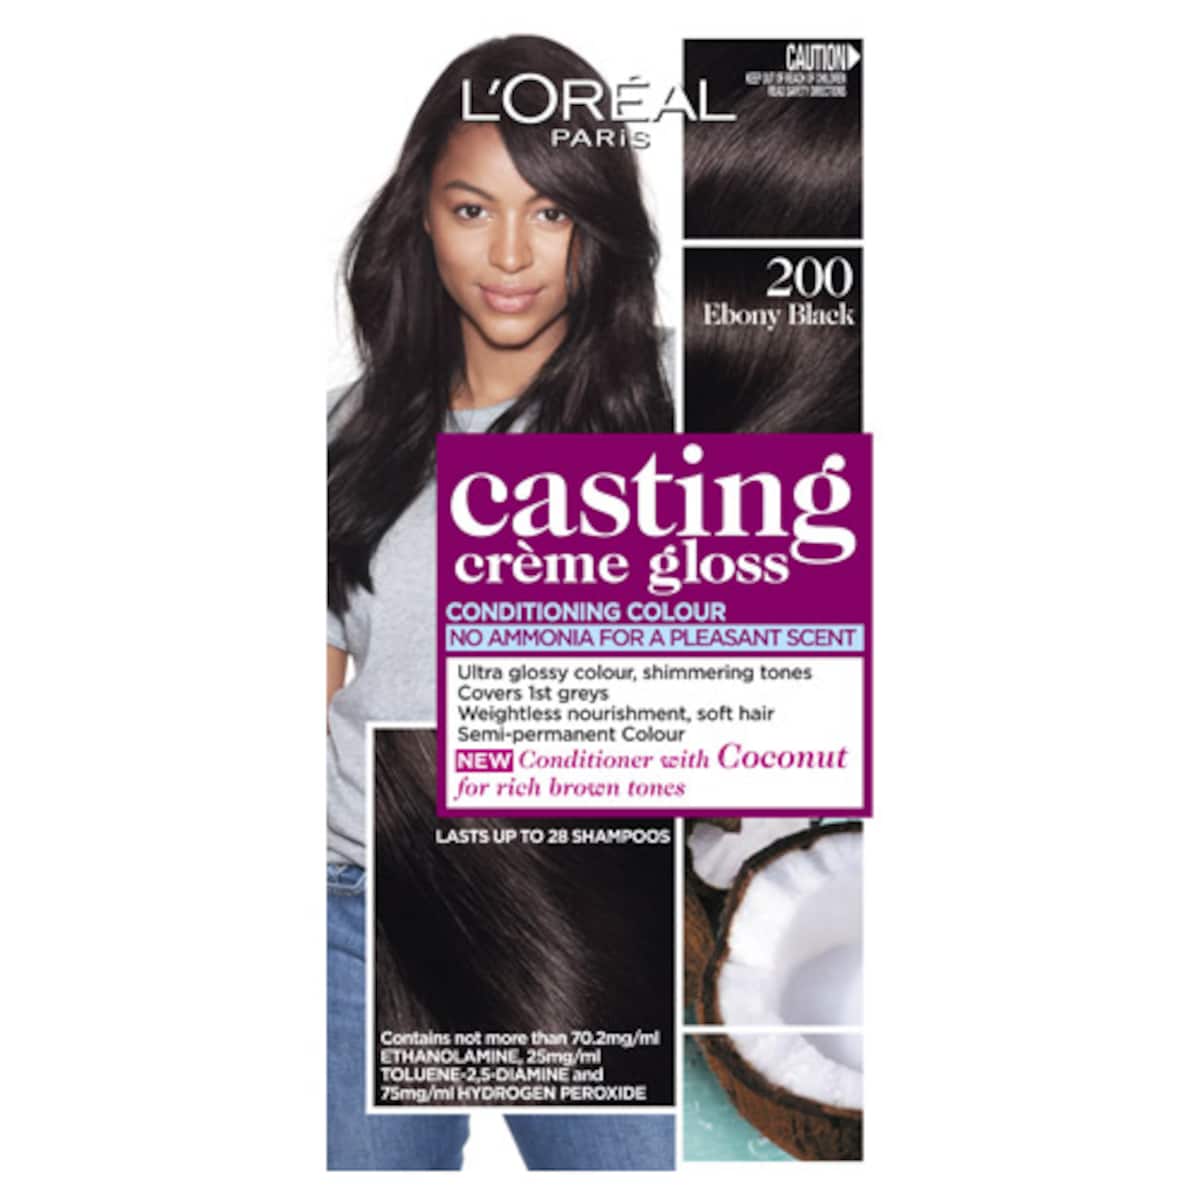 L'Oreal Casting Creme Gloss 200 Ebony Black Hair Colour